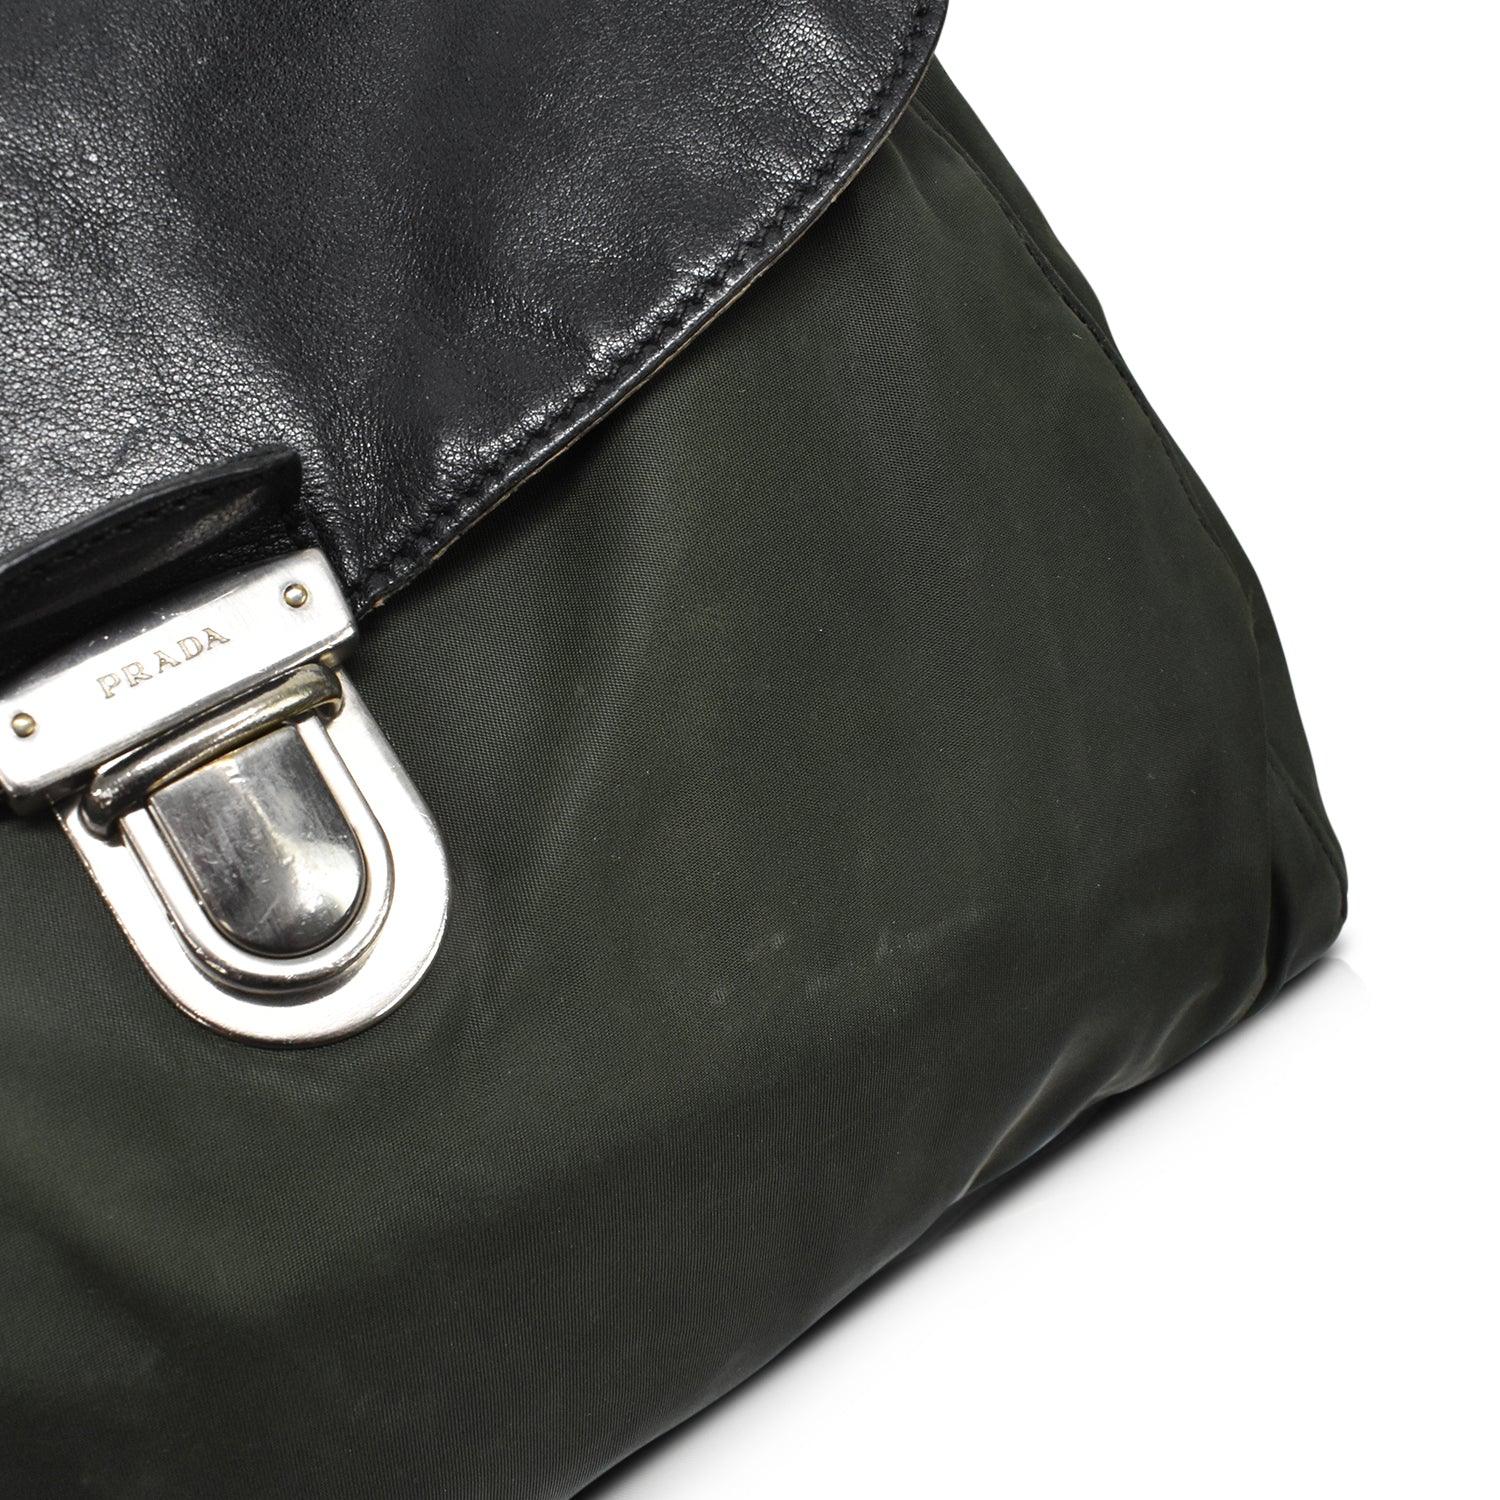 Prada Shoulder Bag - Fashionably Yours